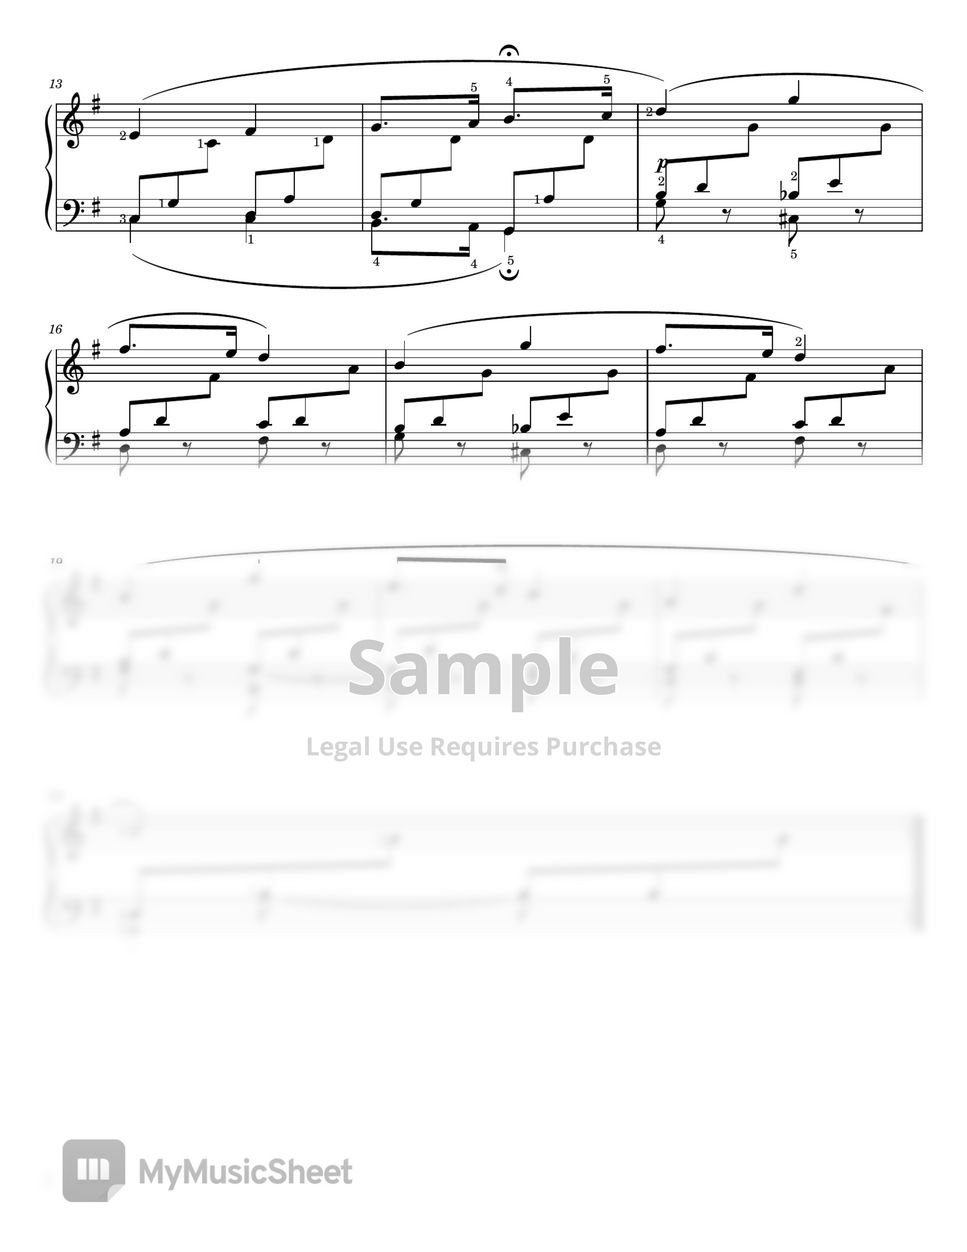 Robert Schumann - Kinderszenen Op.15 No. 1 (Von fremden Ländern und Menschen - Original For Piano Solo With Fingered) by poon